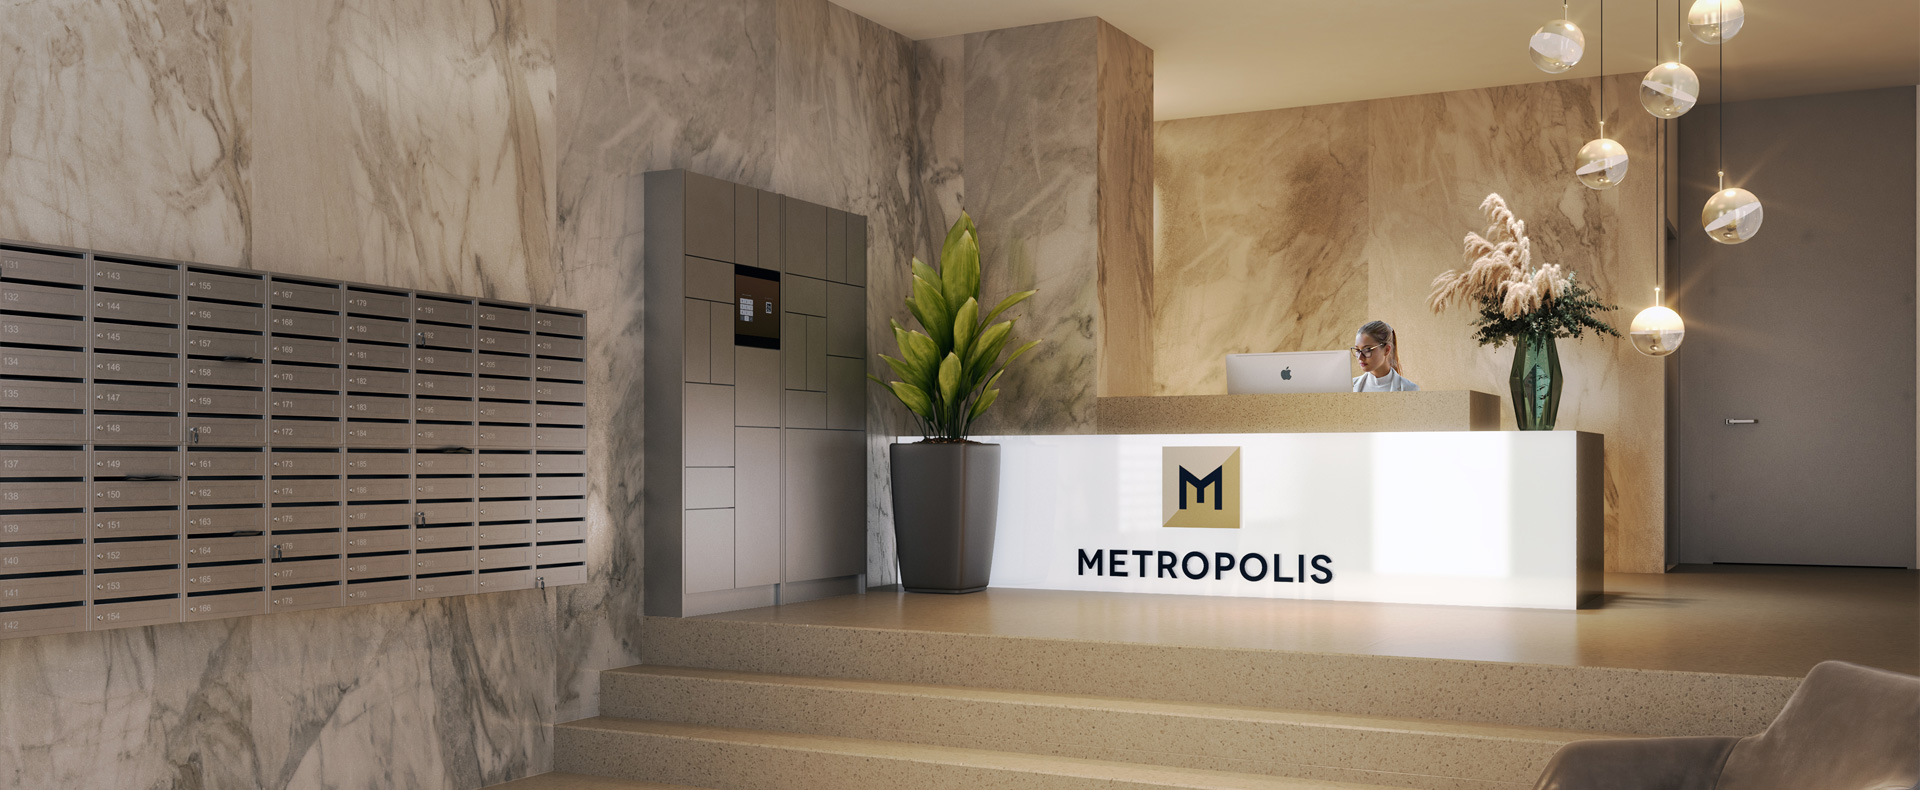 Metropolis projekt